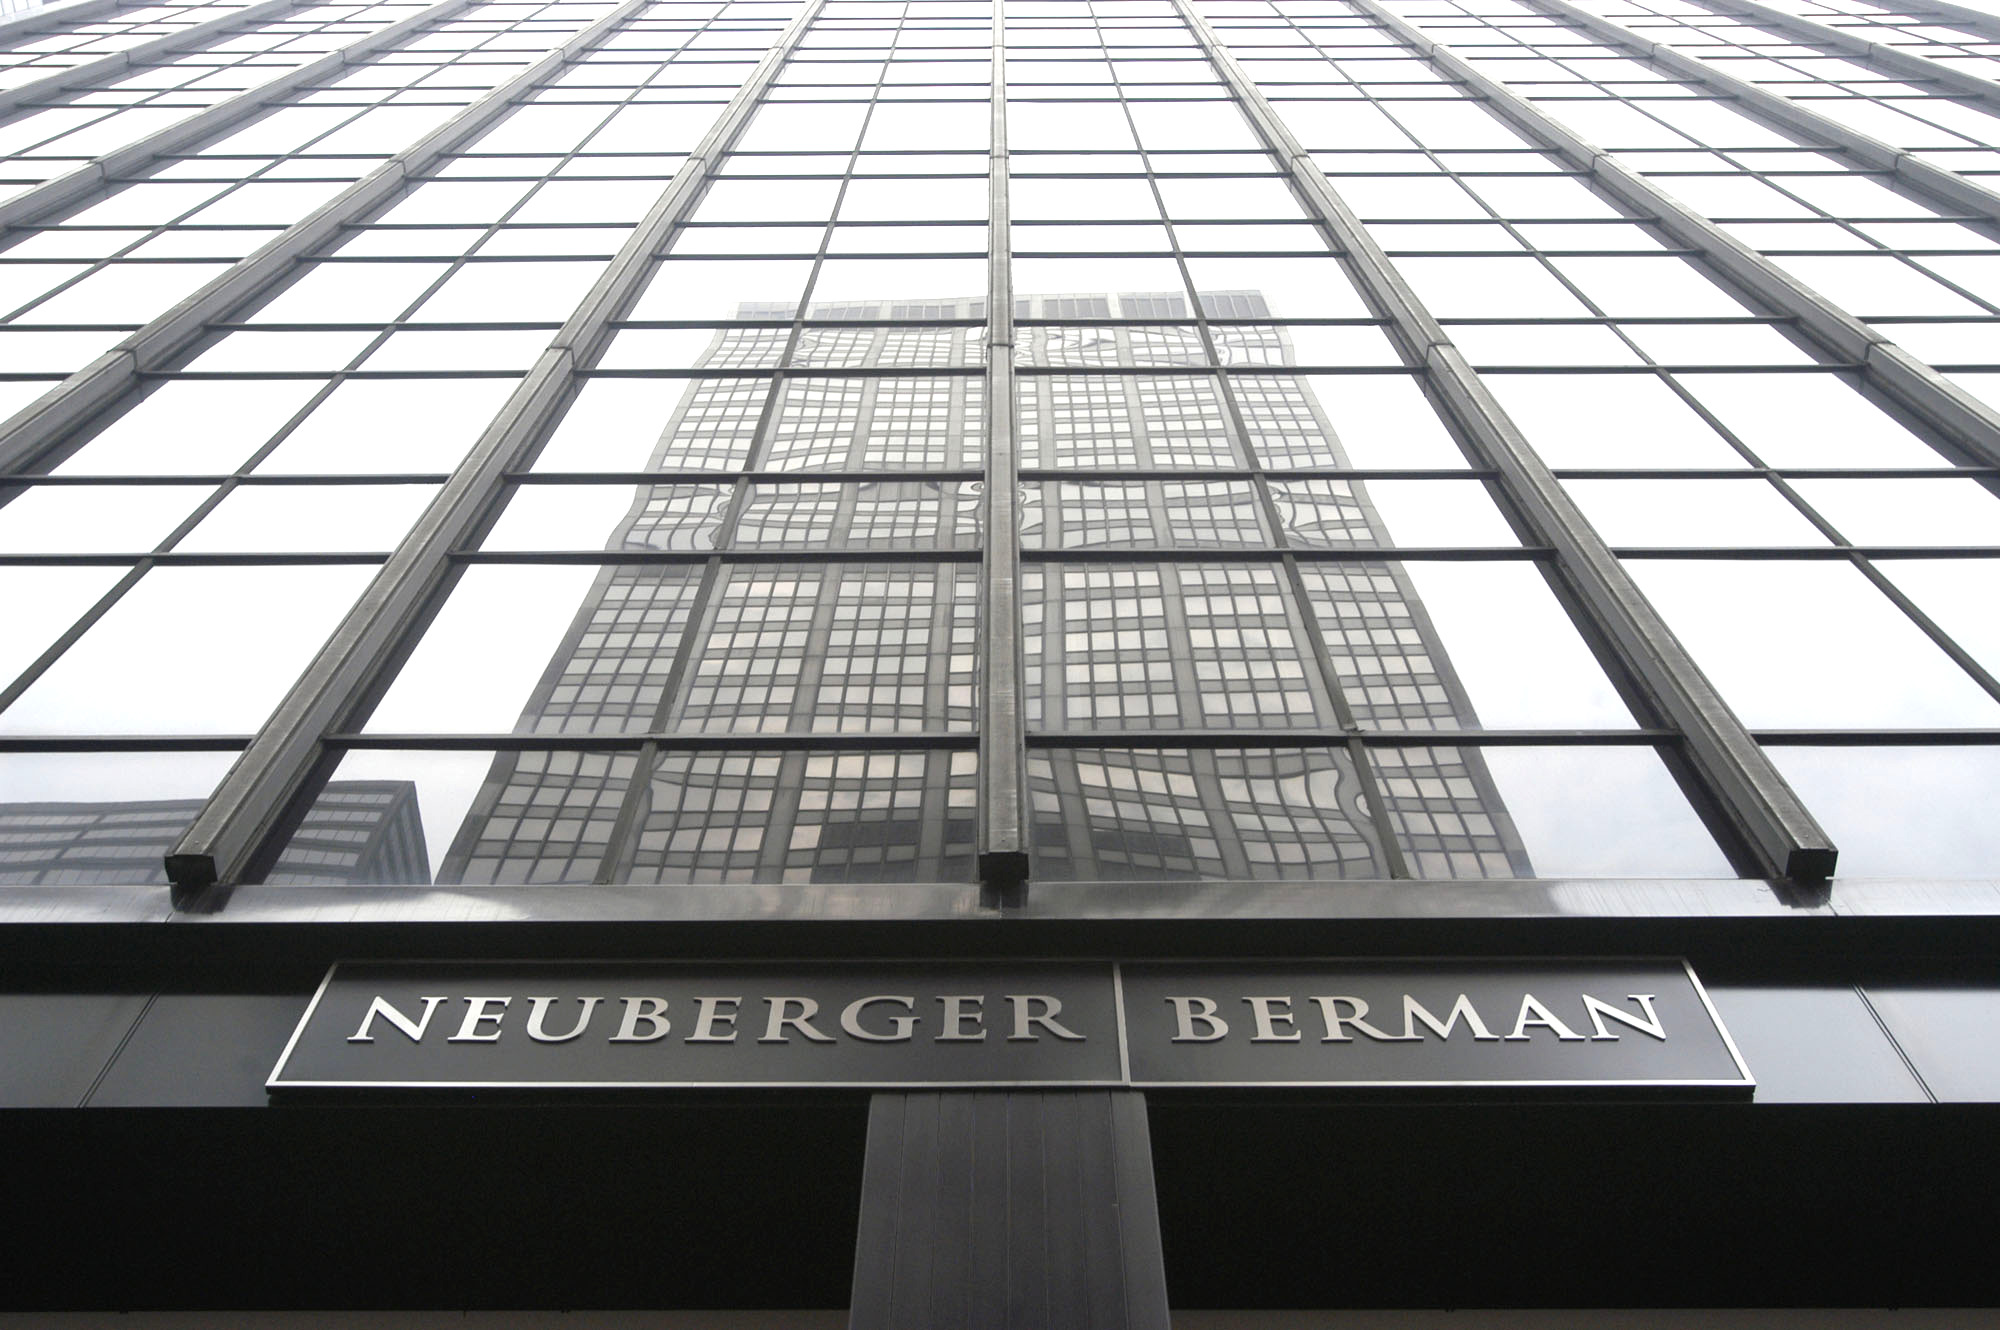 4,000億ドルの資産管理会社であるNeubergerBermanが暗号通貨の取り扱いを開始します